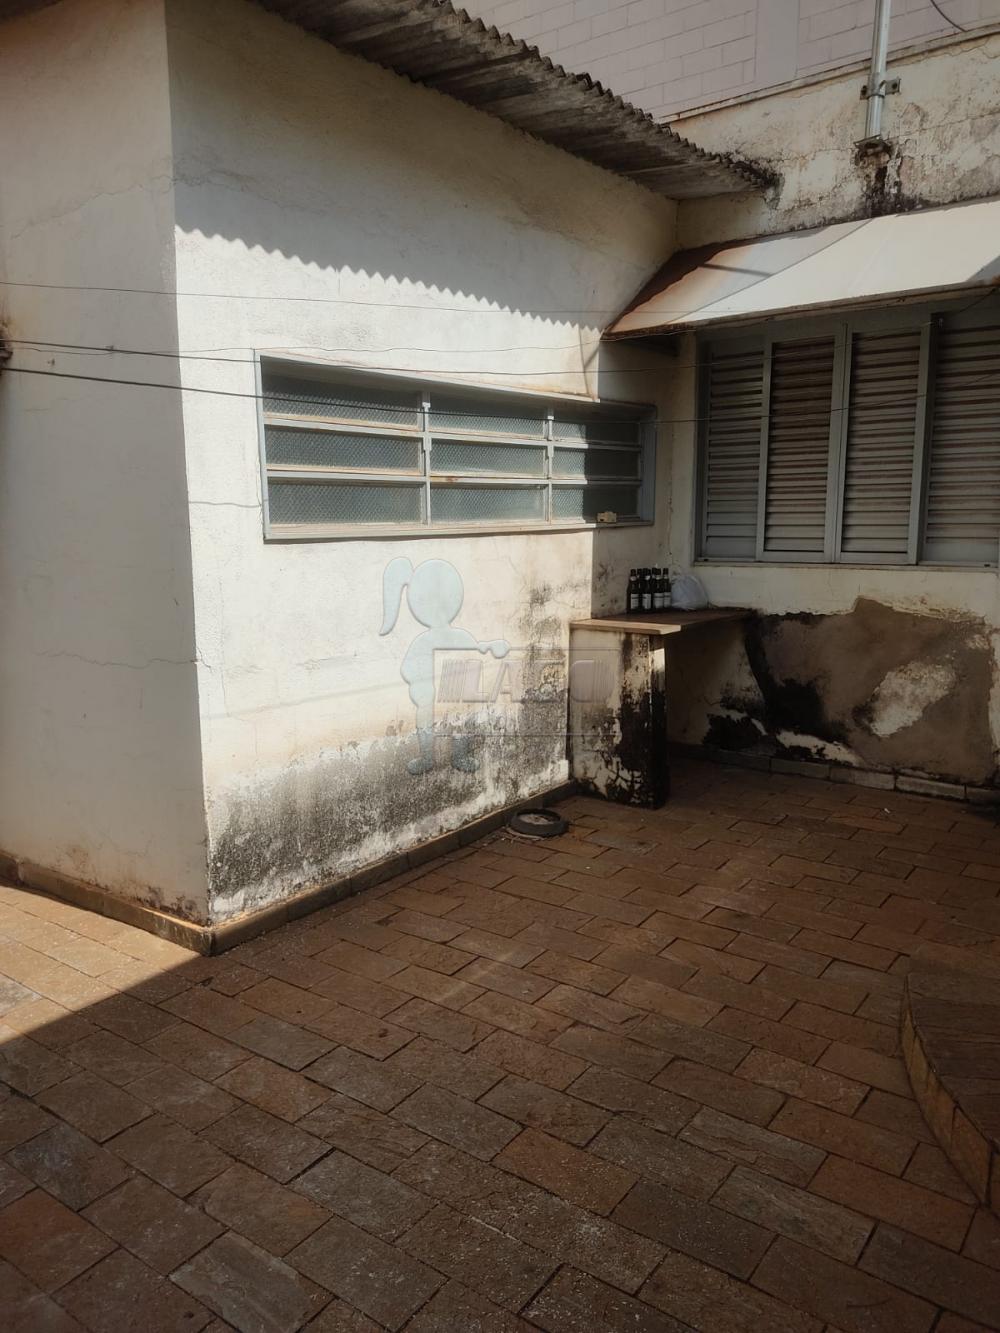 Comprar Casas / Padrão em Ribeirão Preto R$ 800.000,00 - Foto 5